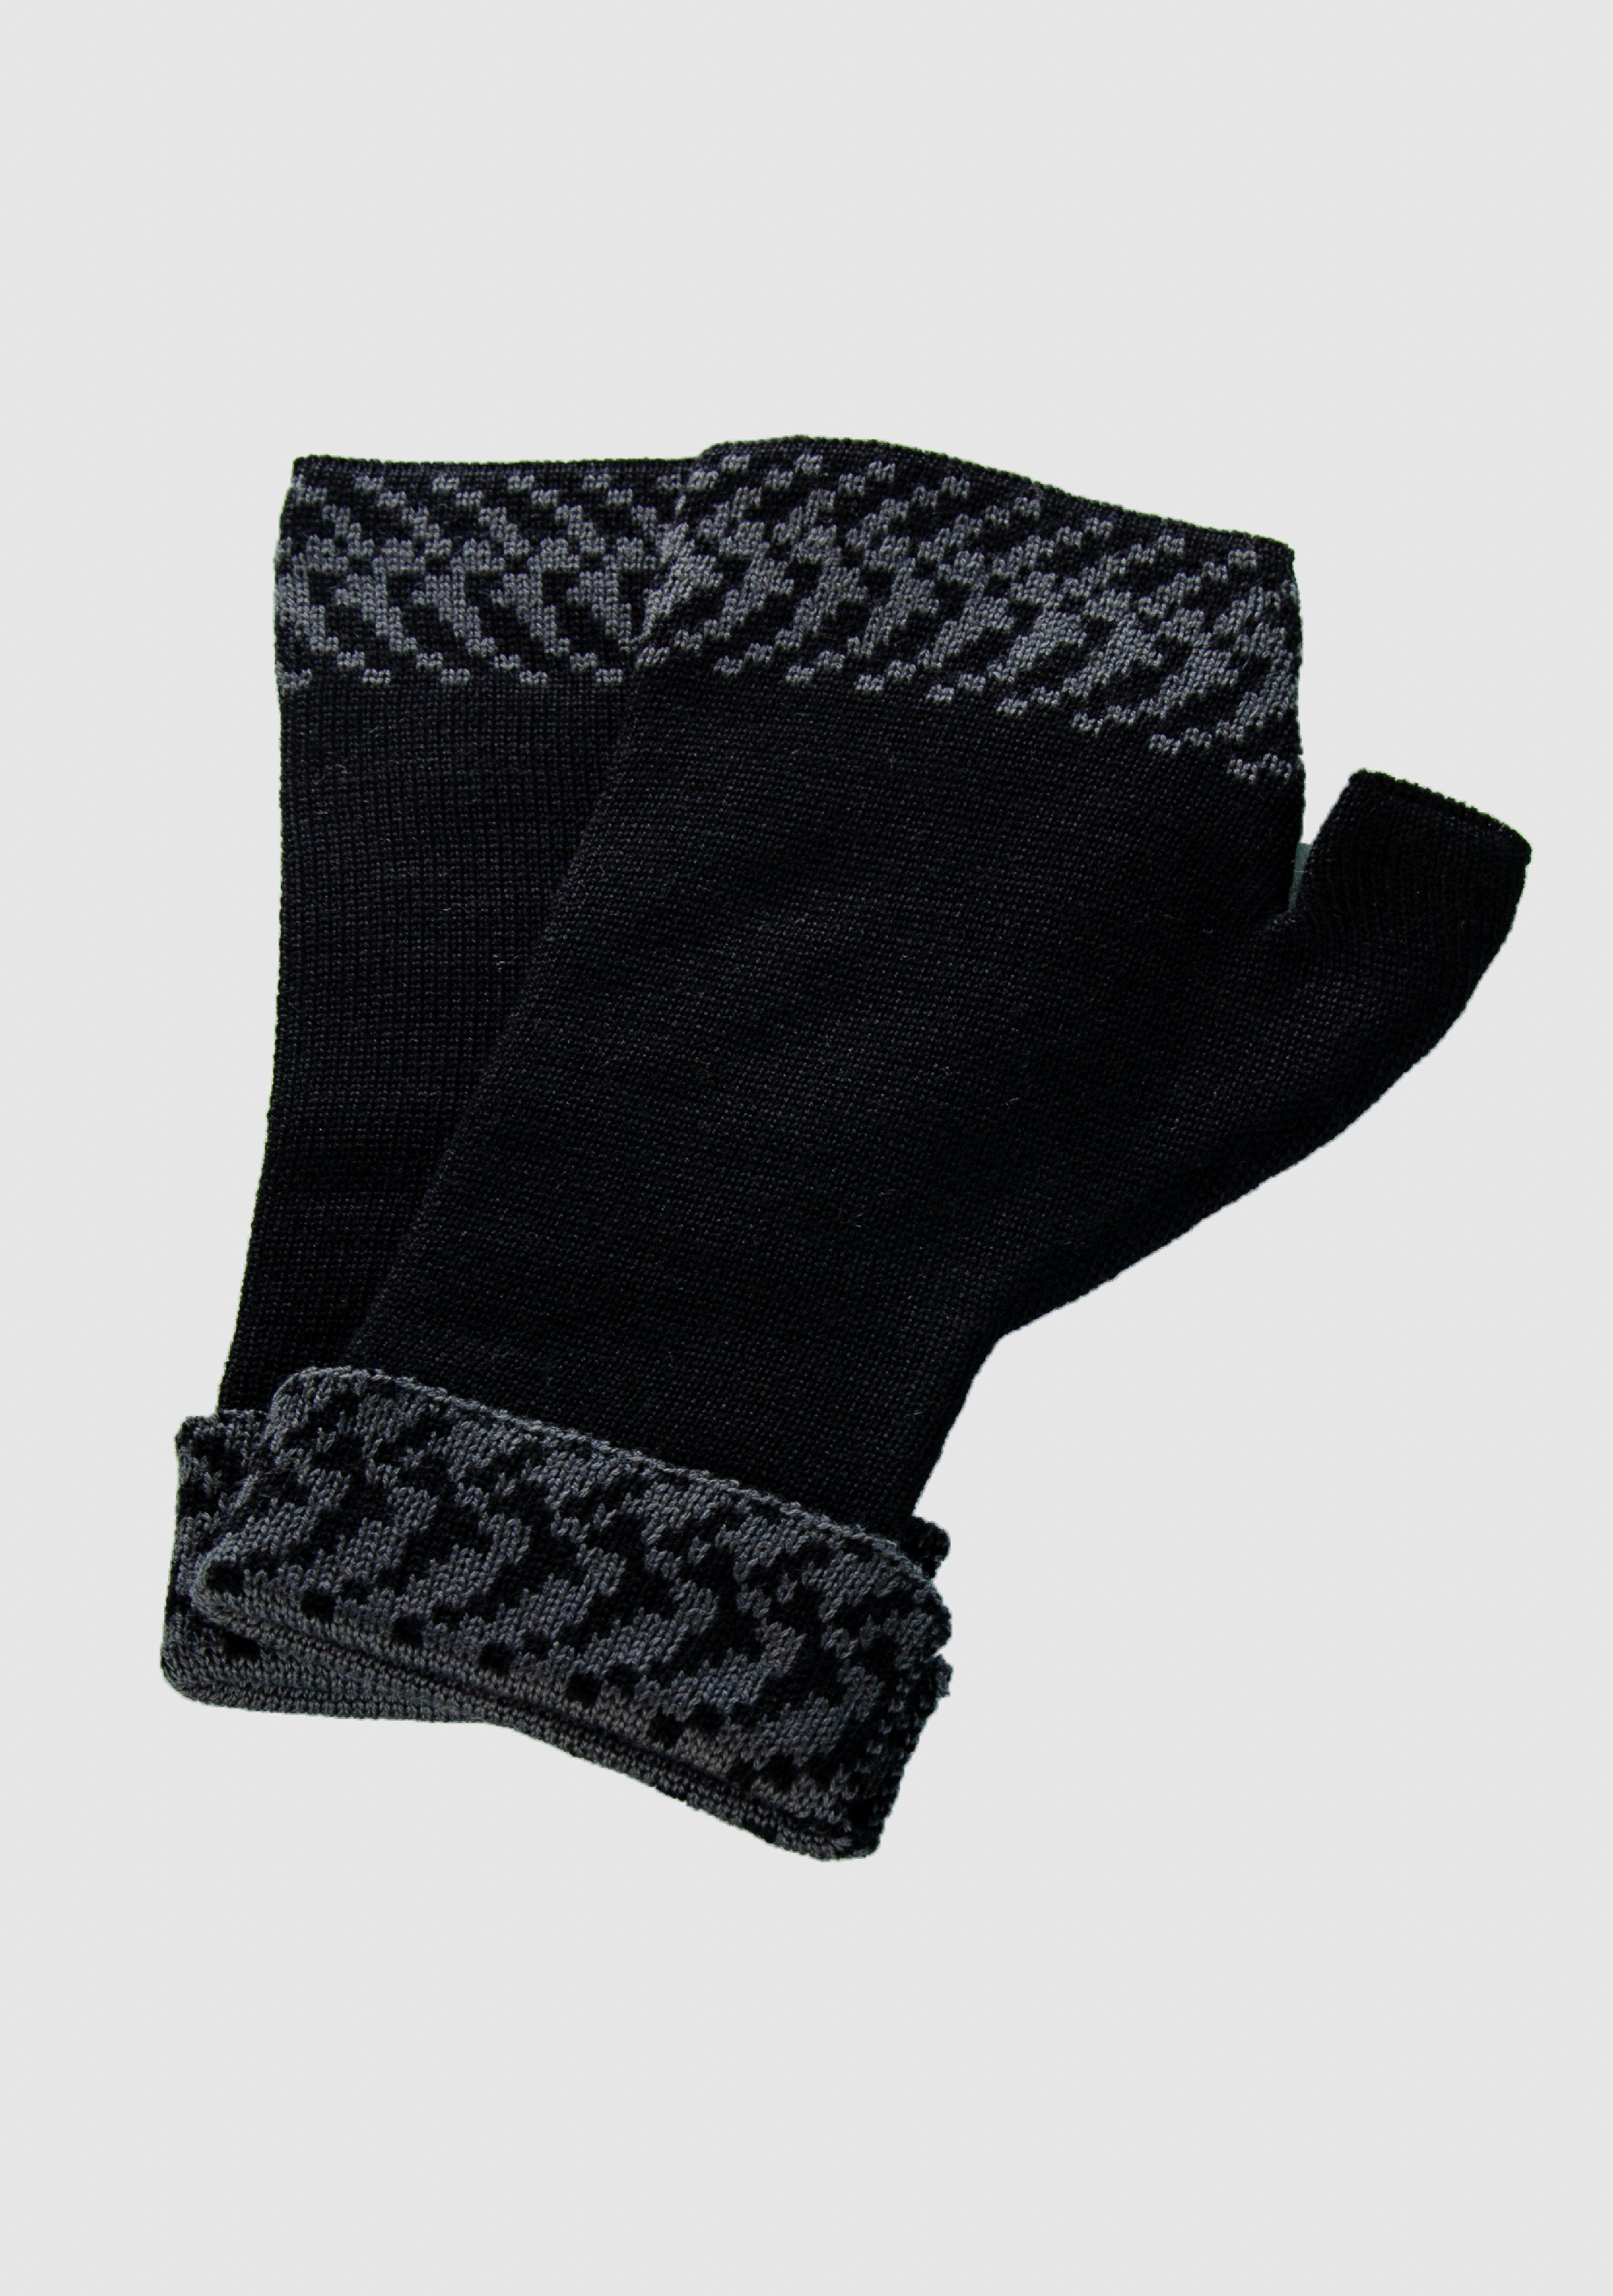 Merino Strickhandschuhe aus slow extrasoft in vielen schwarz_graphit Pixel fashion LANARTO Merino Farben Handwärmer 100%